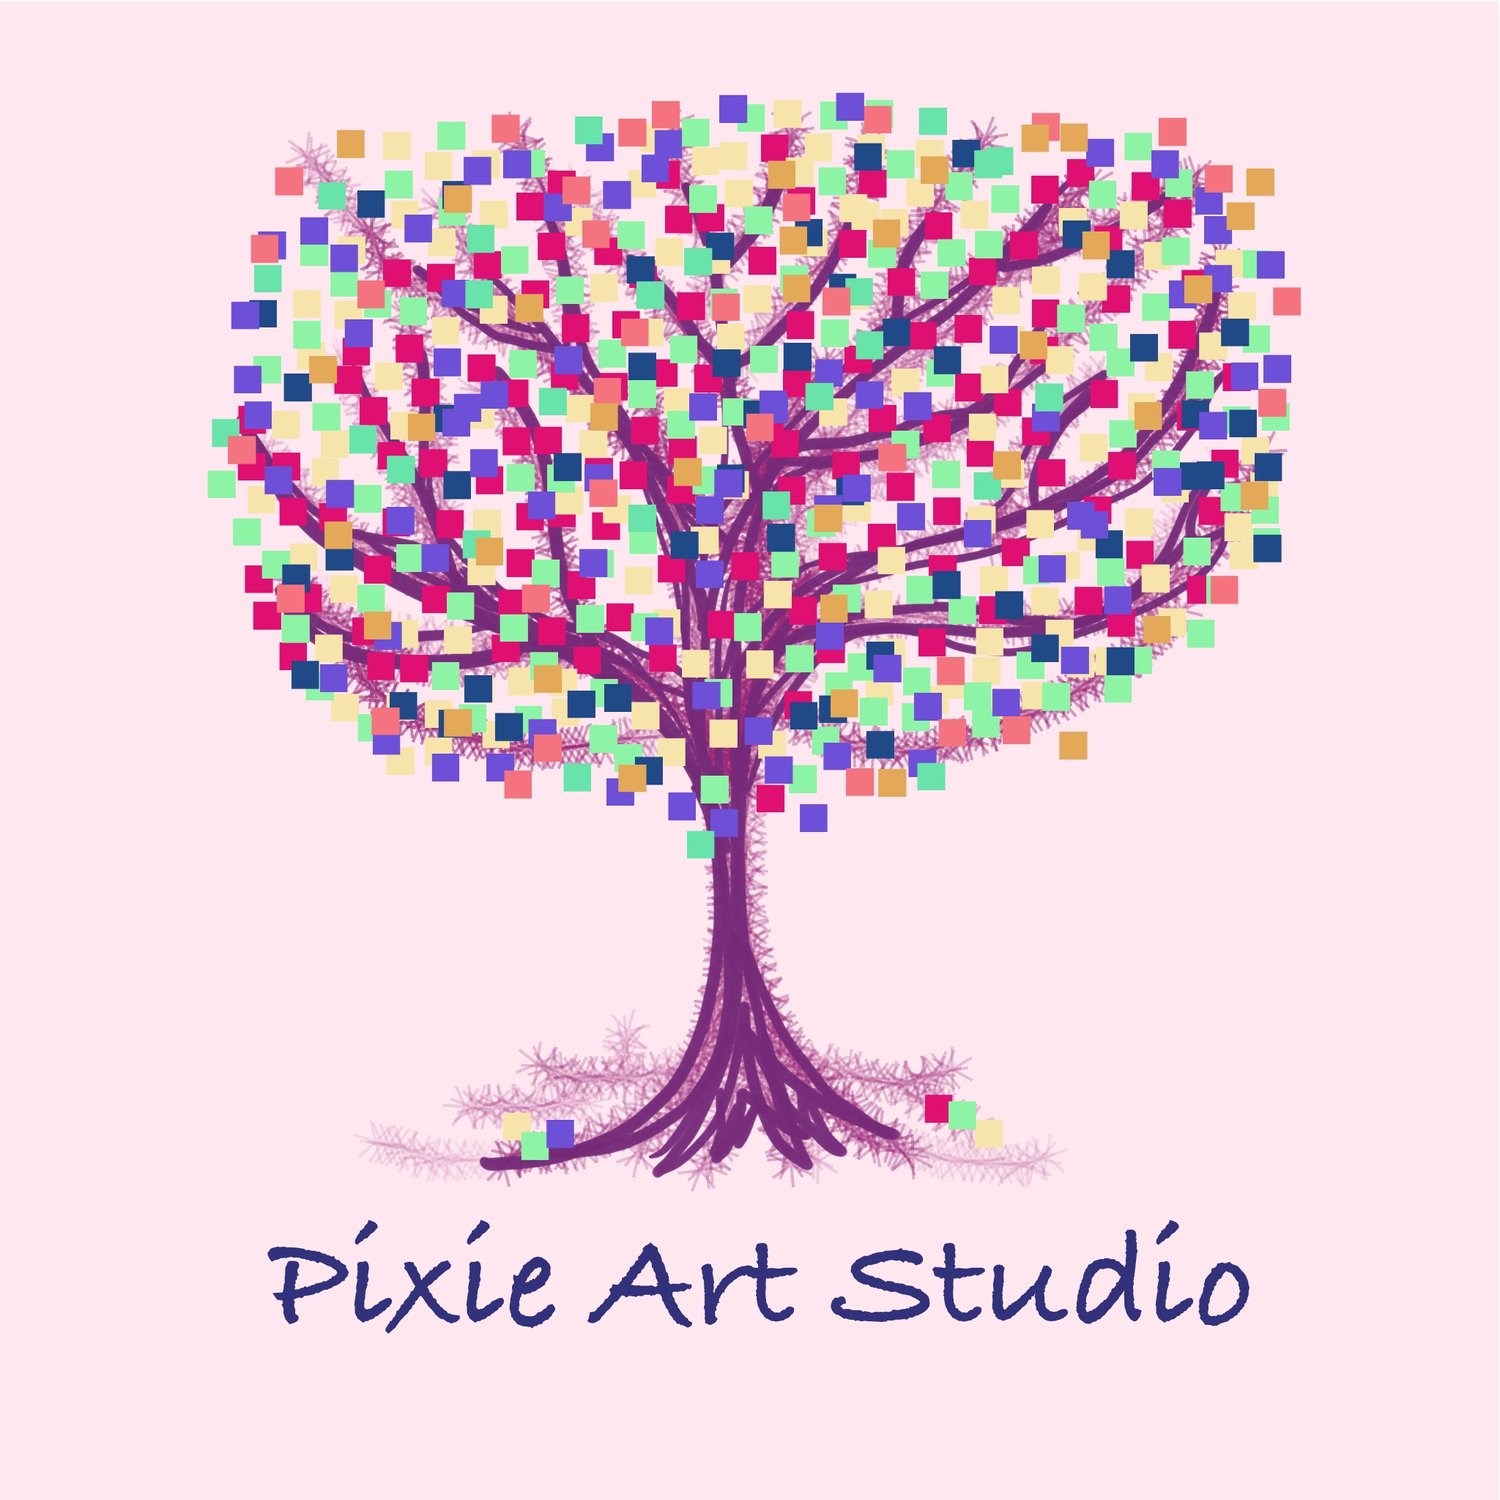 PIXIE ART STUDIO